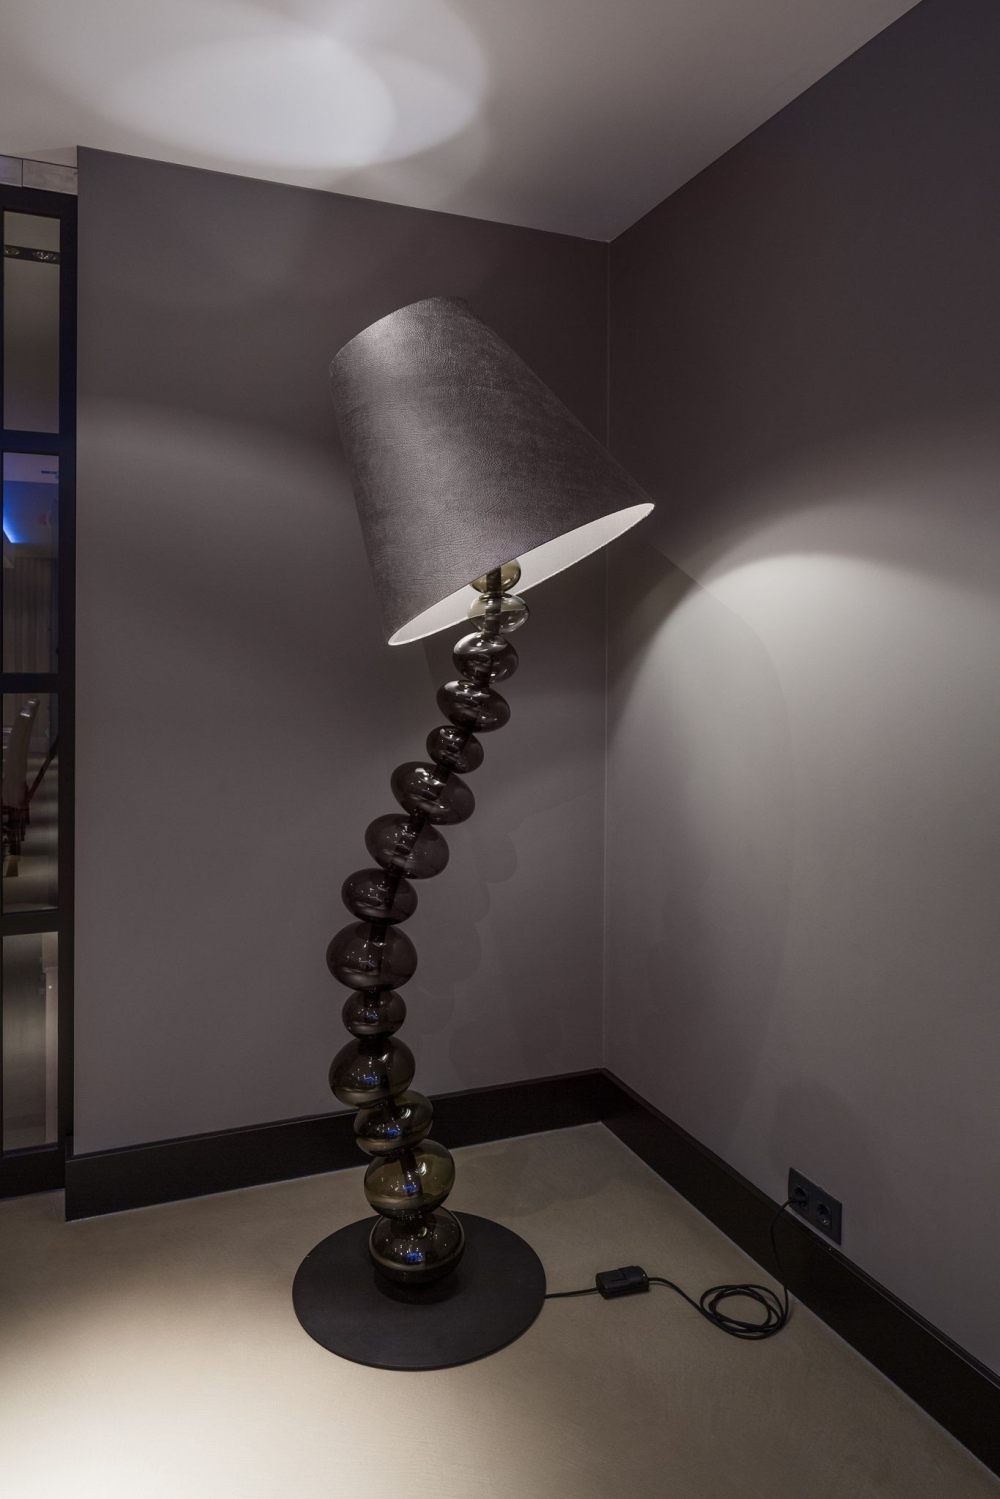 19-dream-lamp-design1.jpg